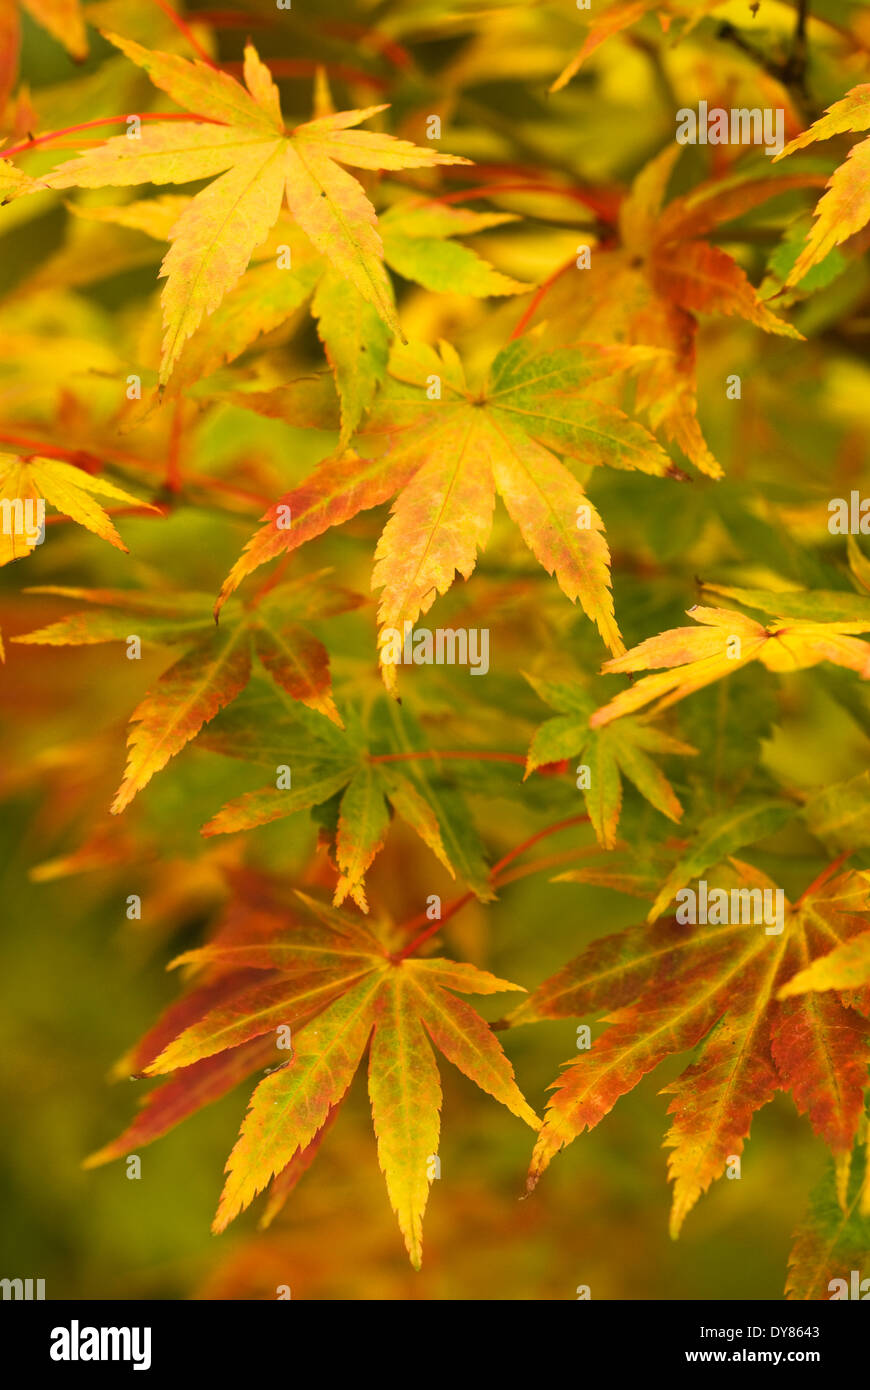 Close up of Acer palmatum 'Sango-kaku' foliage, Japanese Maple. Tree, October. Stock Photo